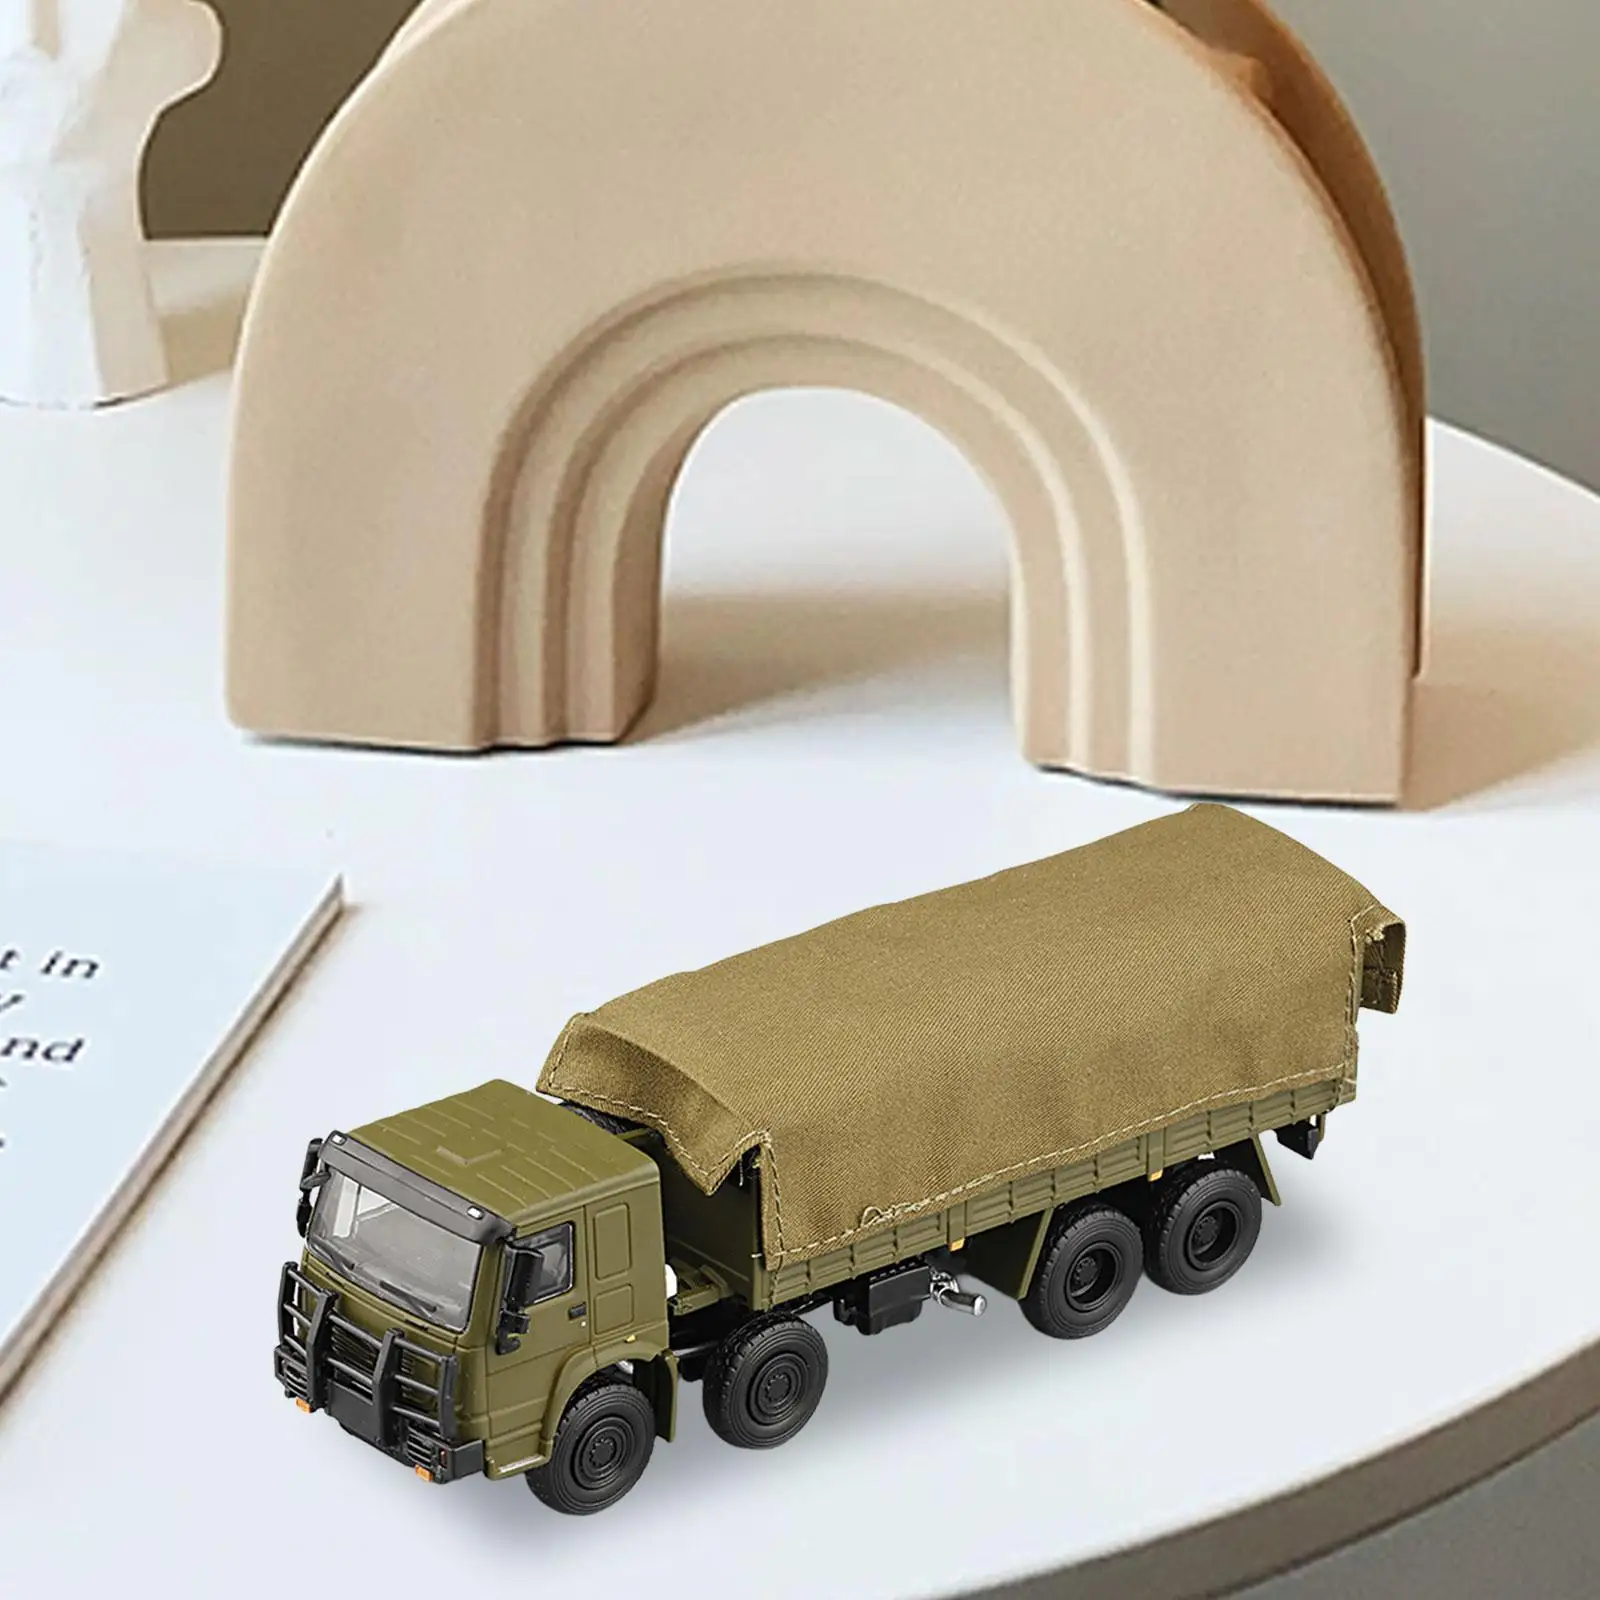 1/64 Miniature Collectible Vehicles Diecast Toys Desk Decoration